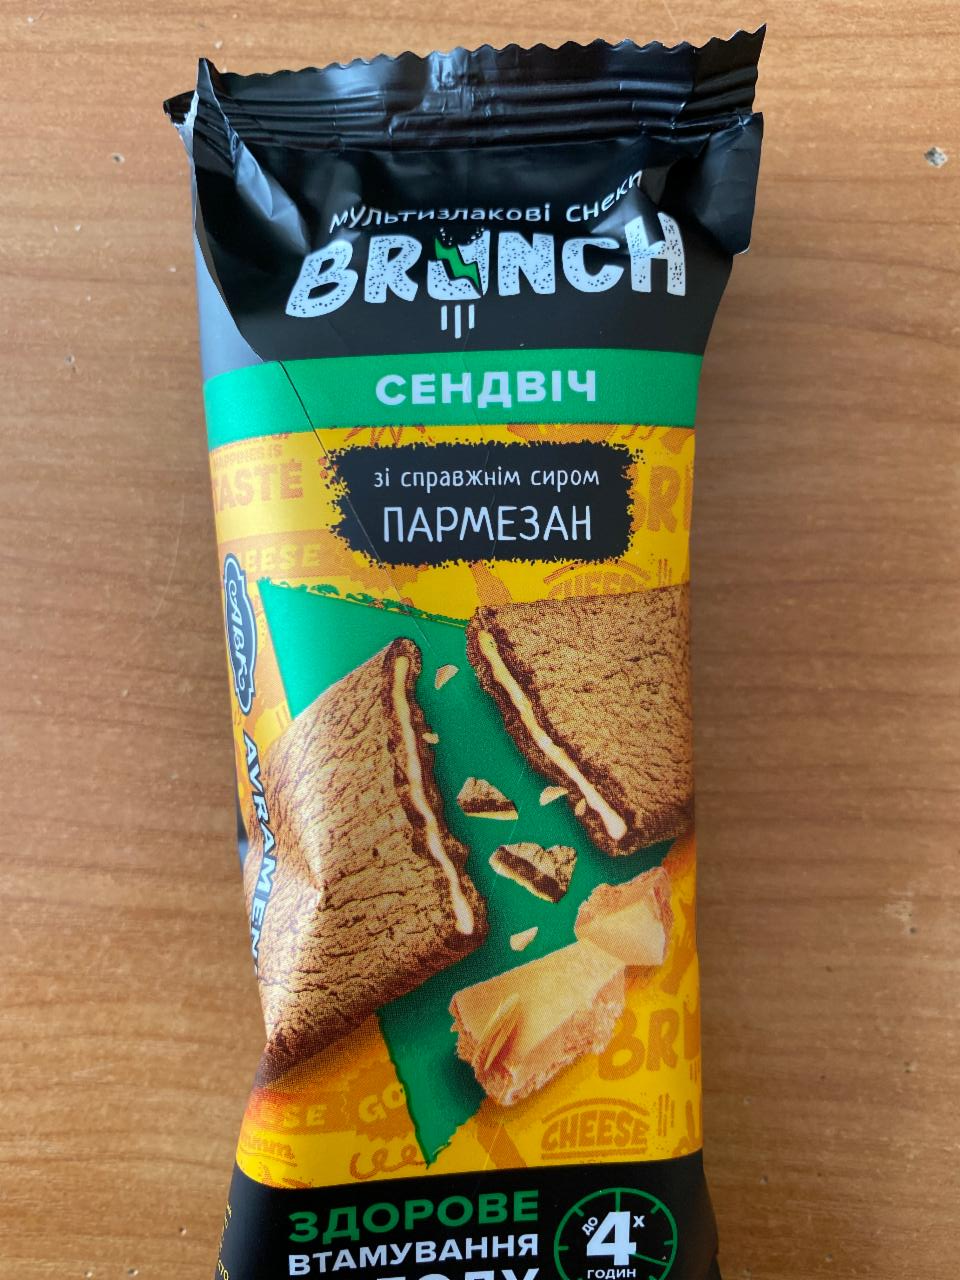 Фото - Снеки мультизлаковые Сэндвич с настоящим сыром Пармезан Brunch АВК